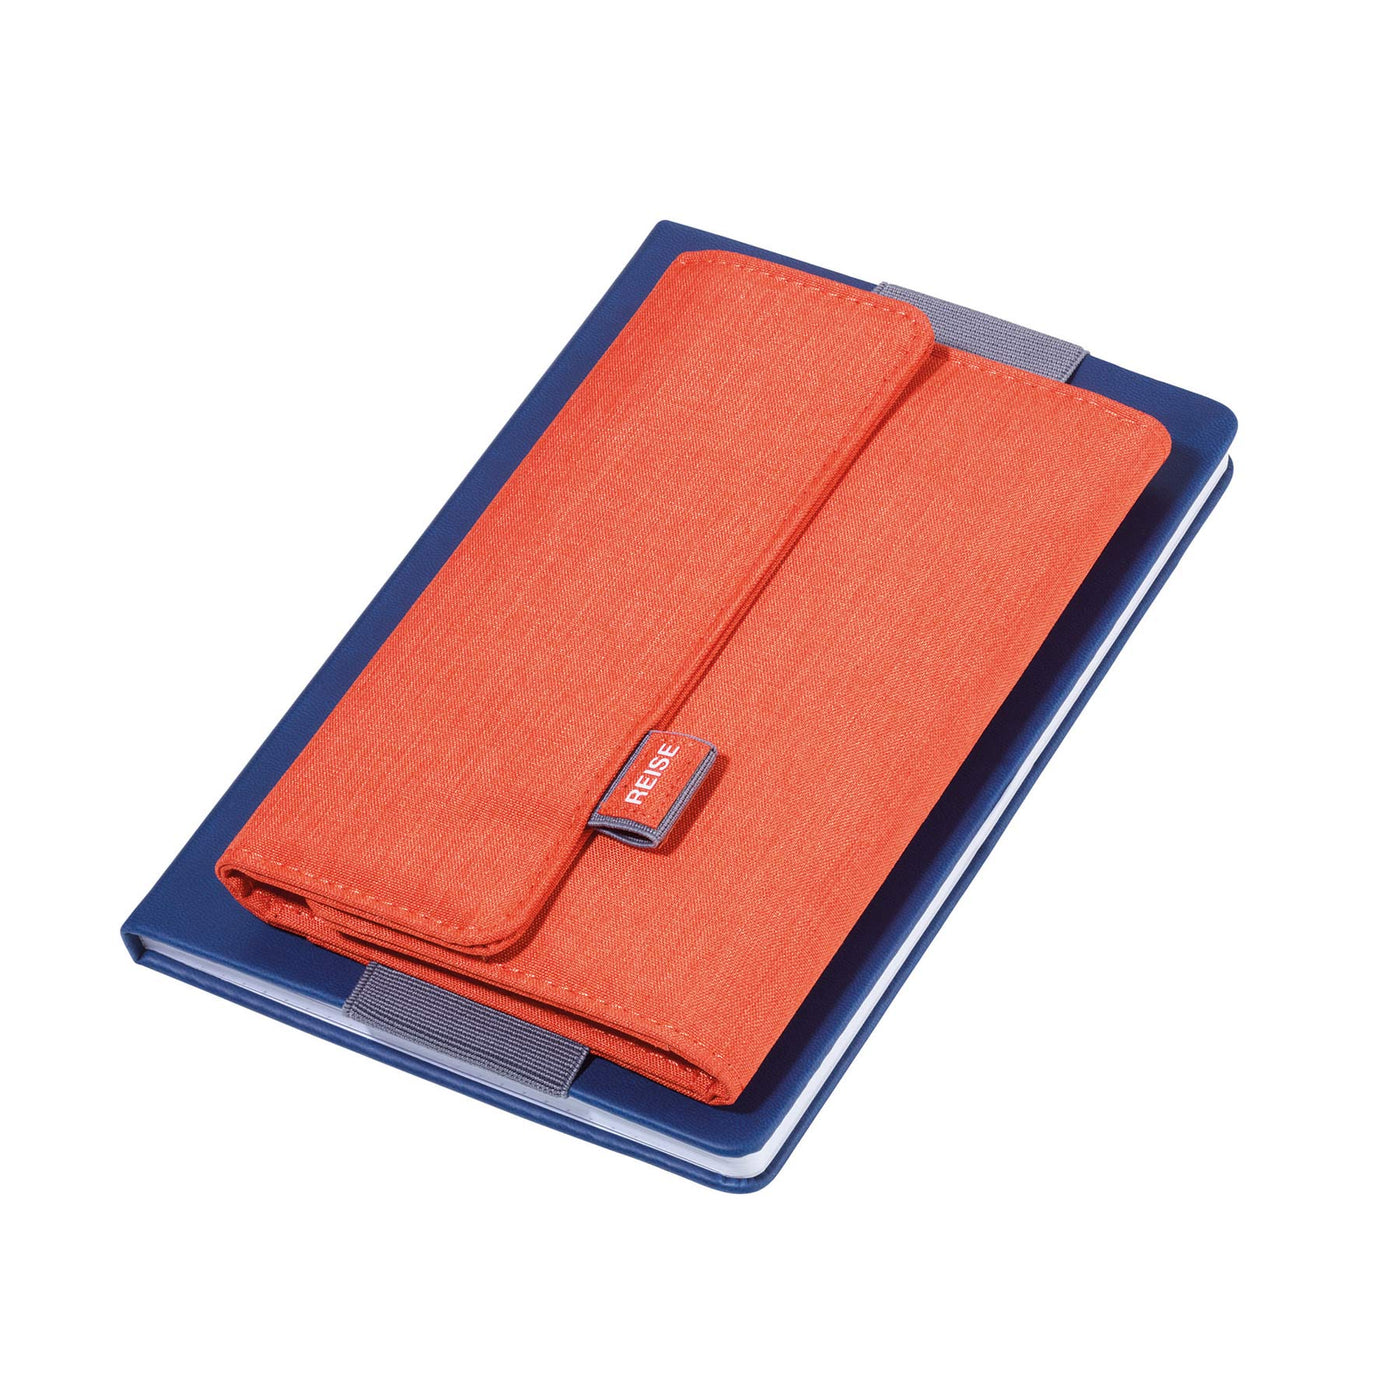 Troika Notebook Wallet Organizer Orange